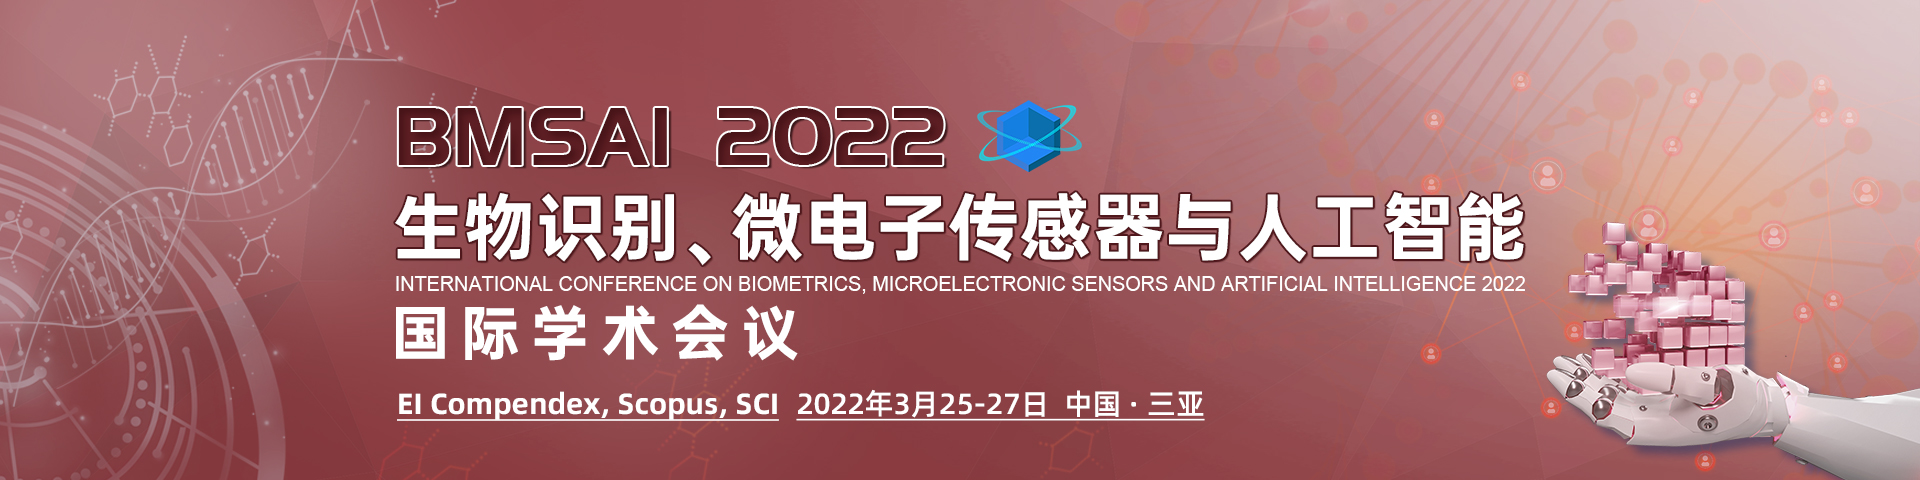 3月三亚-BMSAI-2022-会议艾思banner-20211228.png